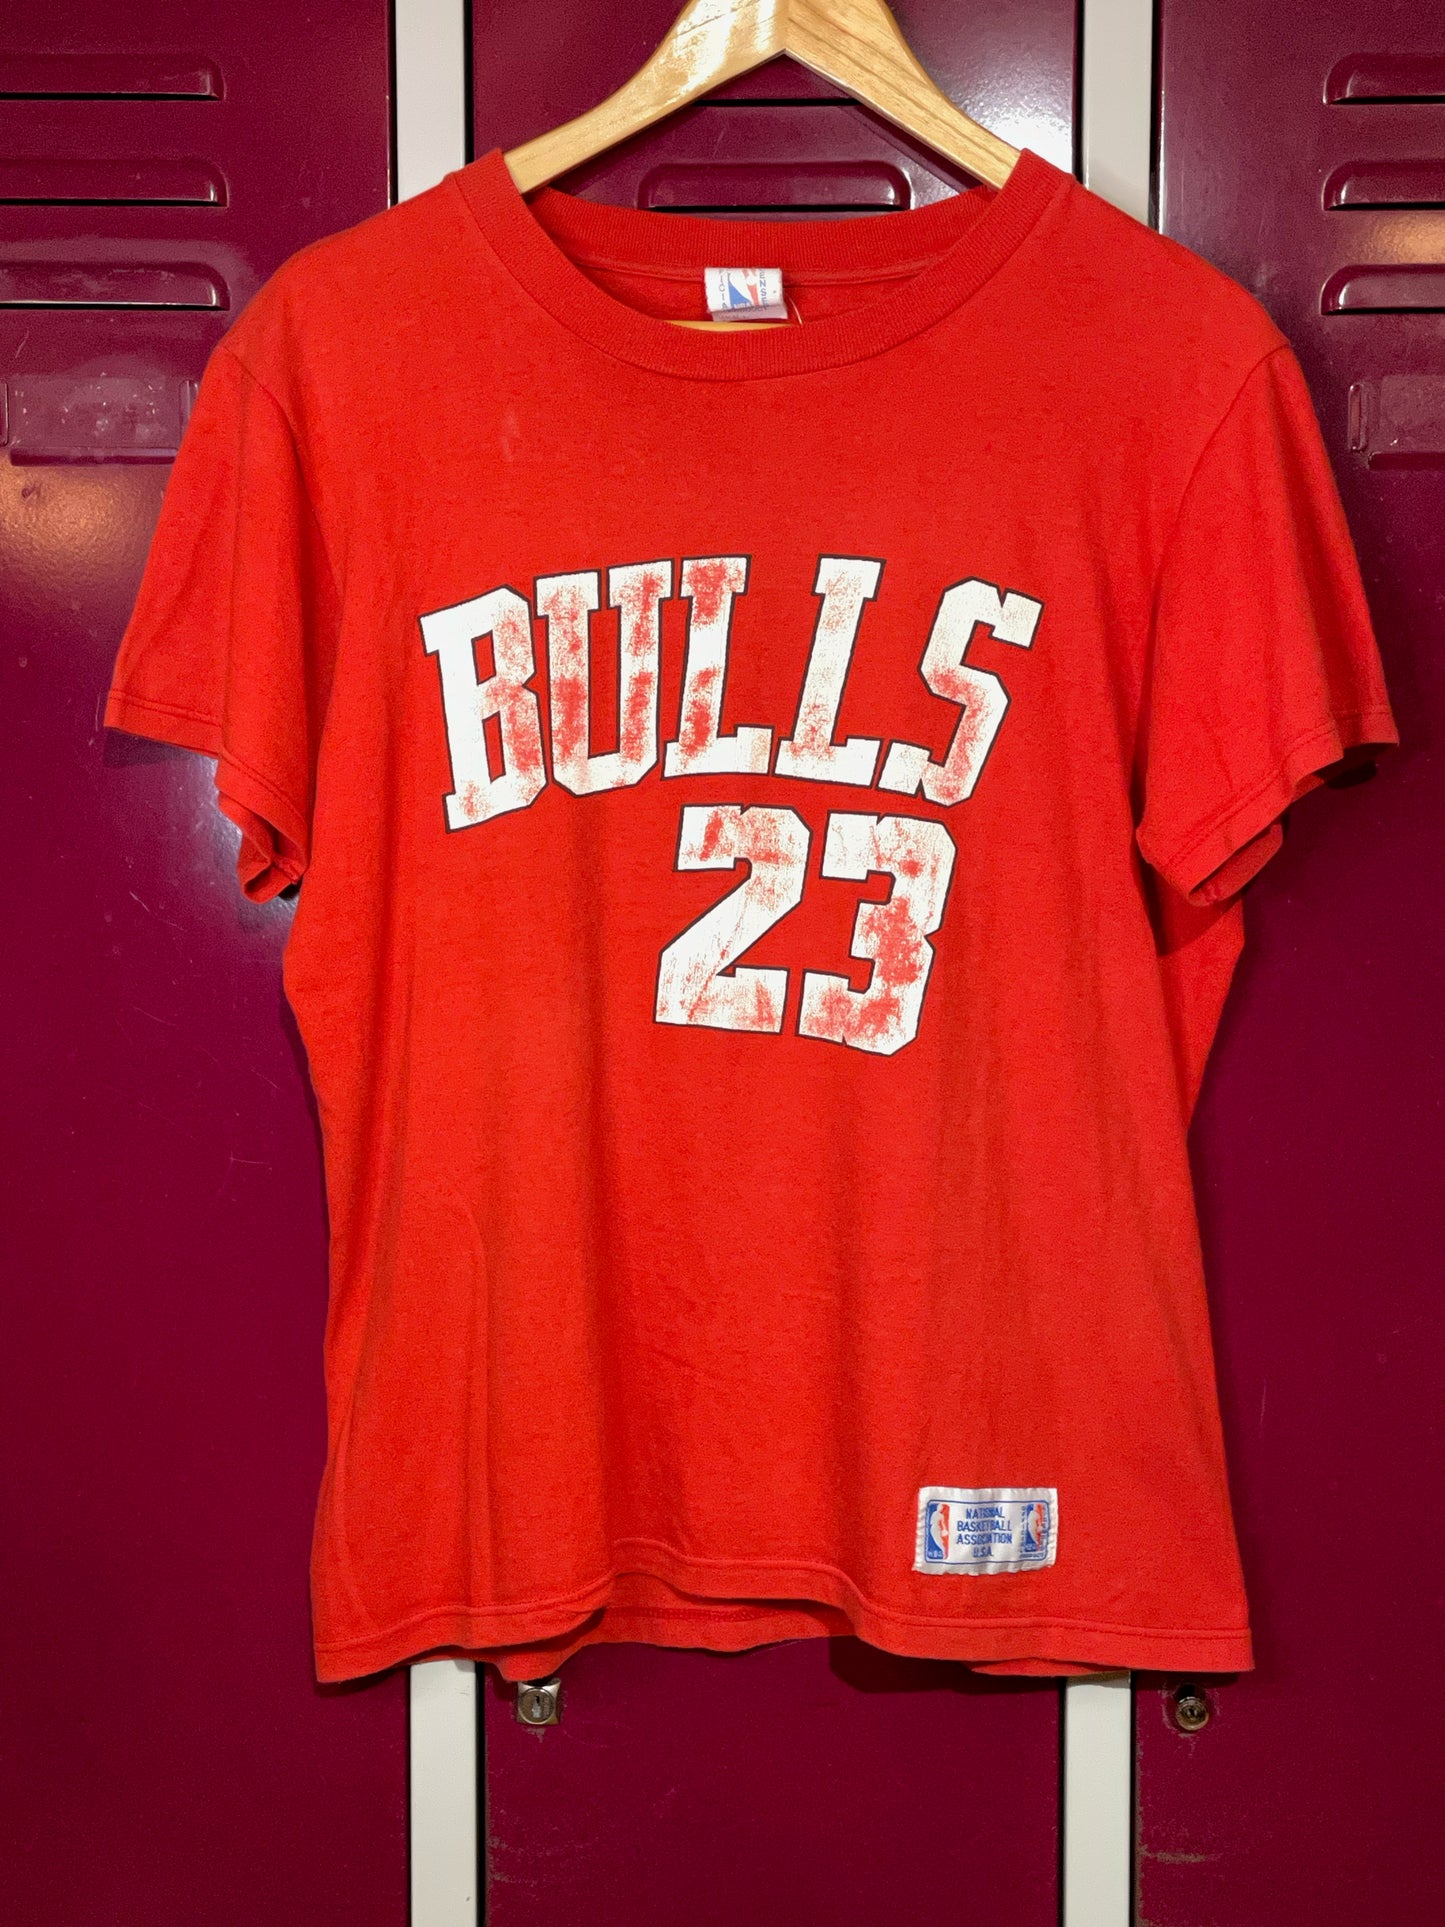 Bulls 23 - Bulls 23 - T-Shirt